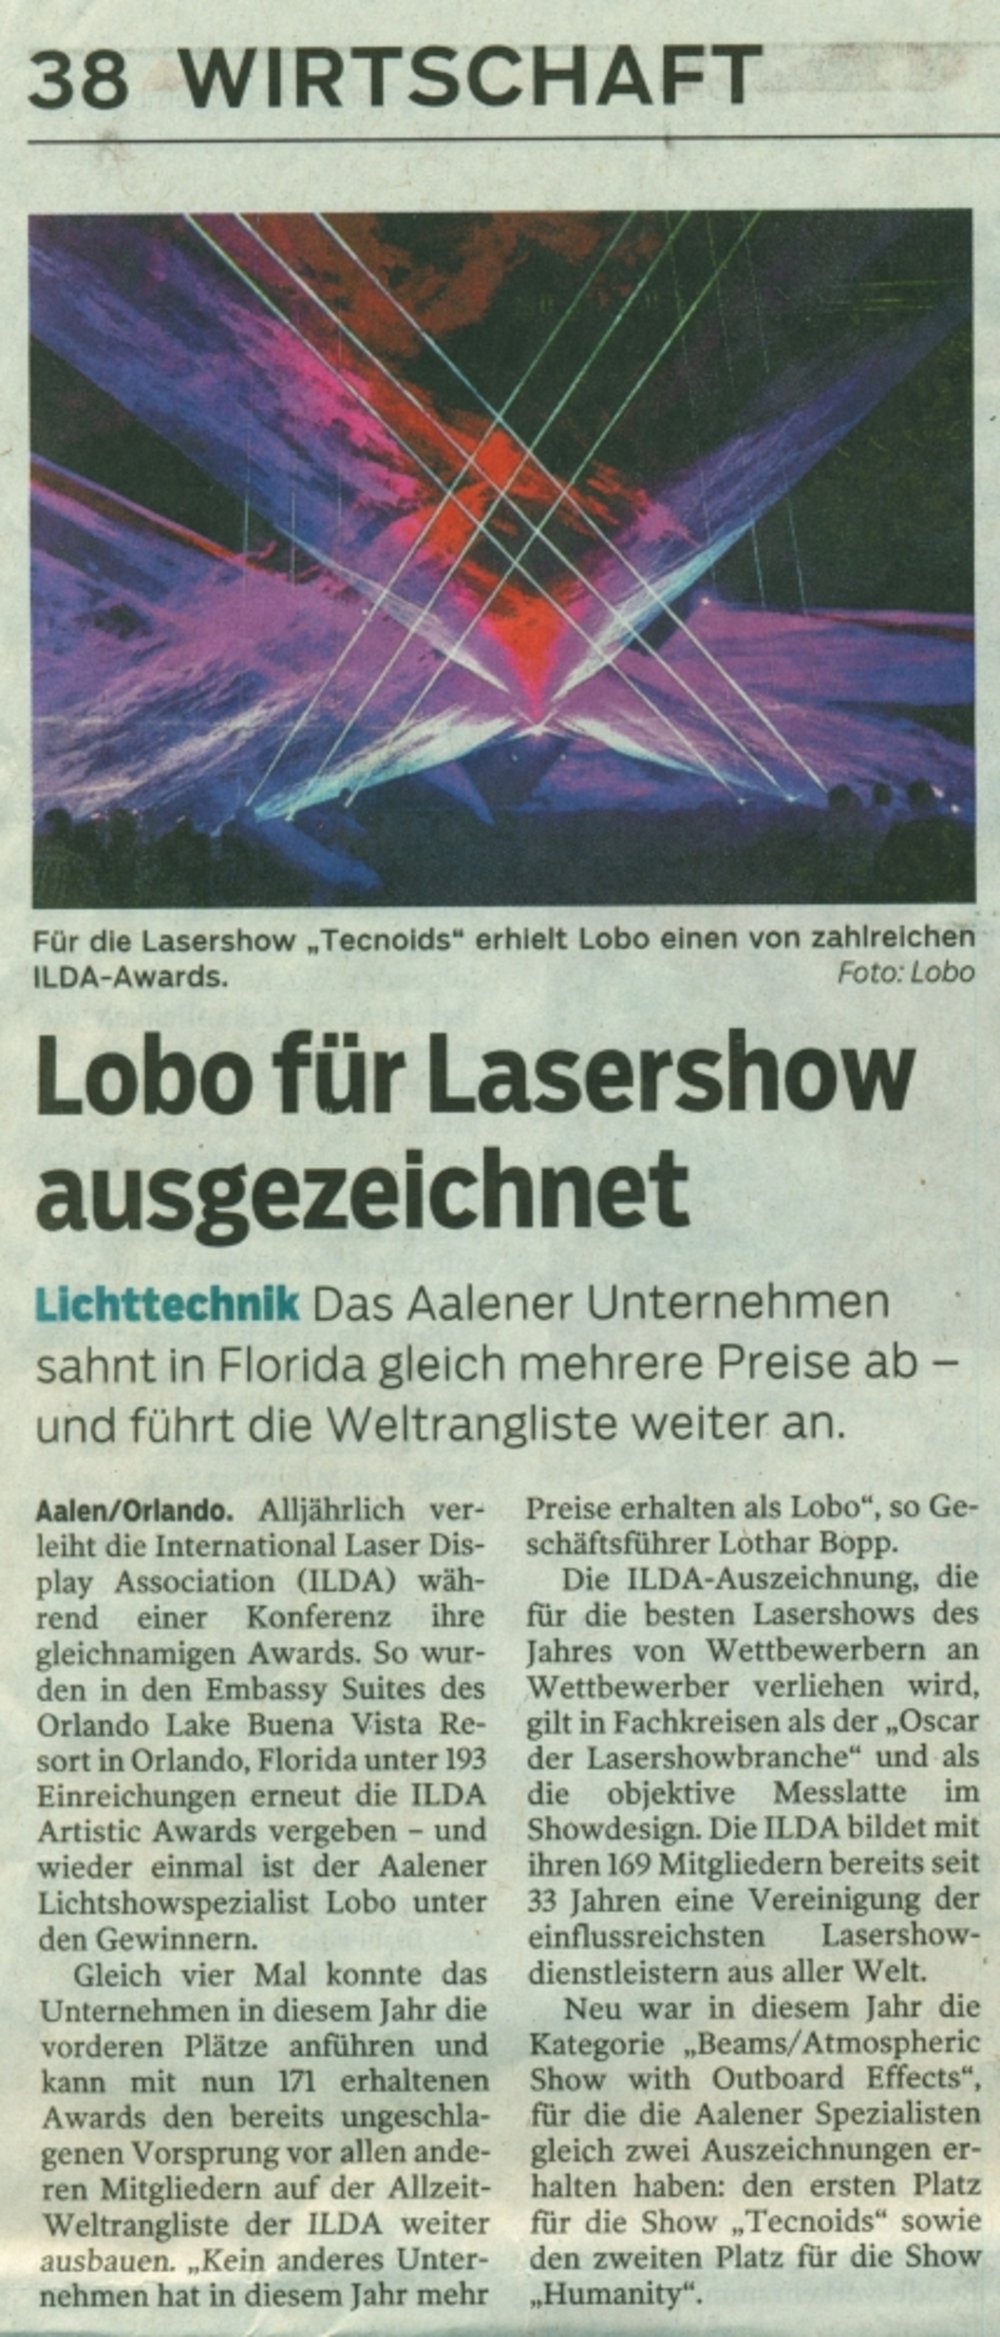 Schwaebische Post 29 November 2019 S38 fuer Lasershow ausgezeichnet